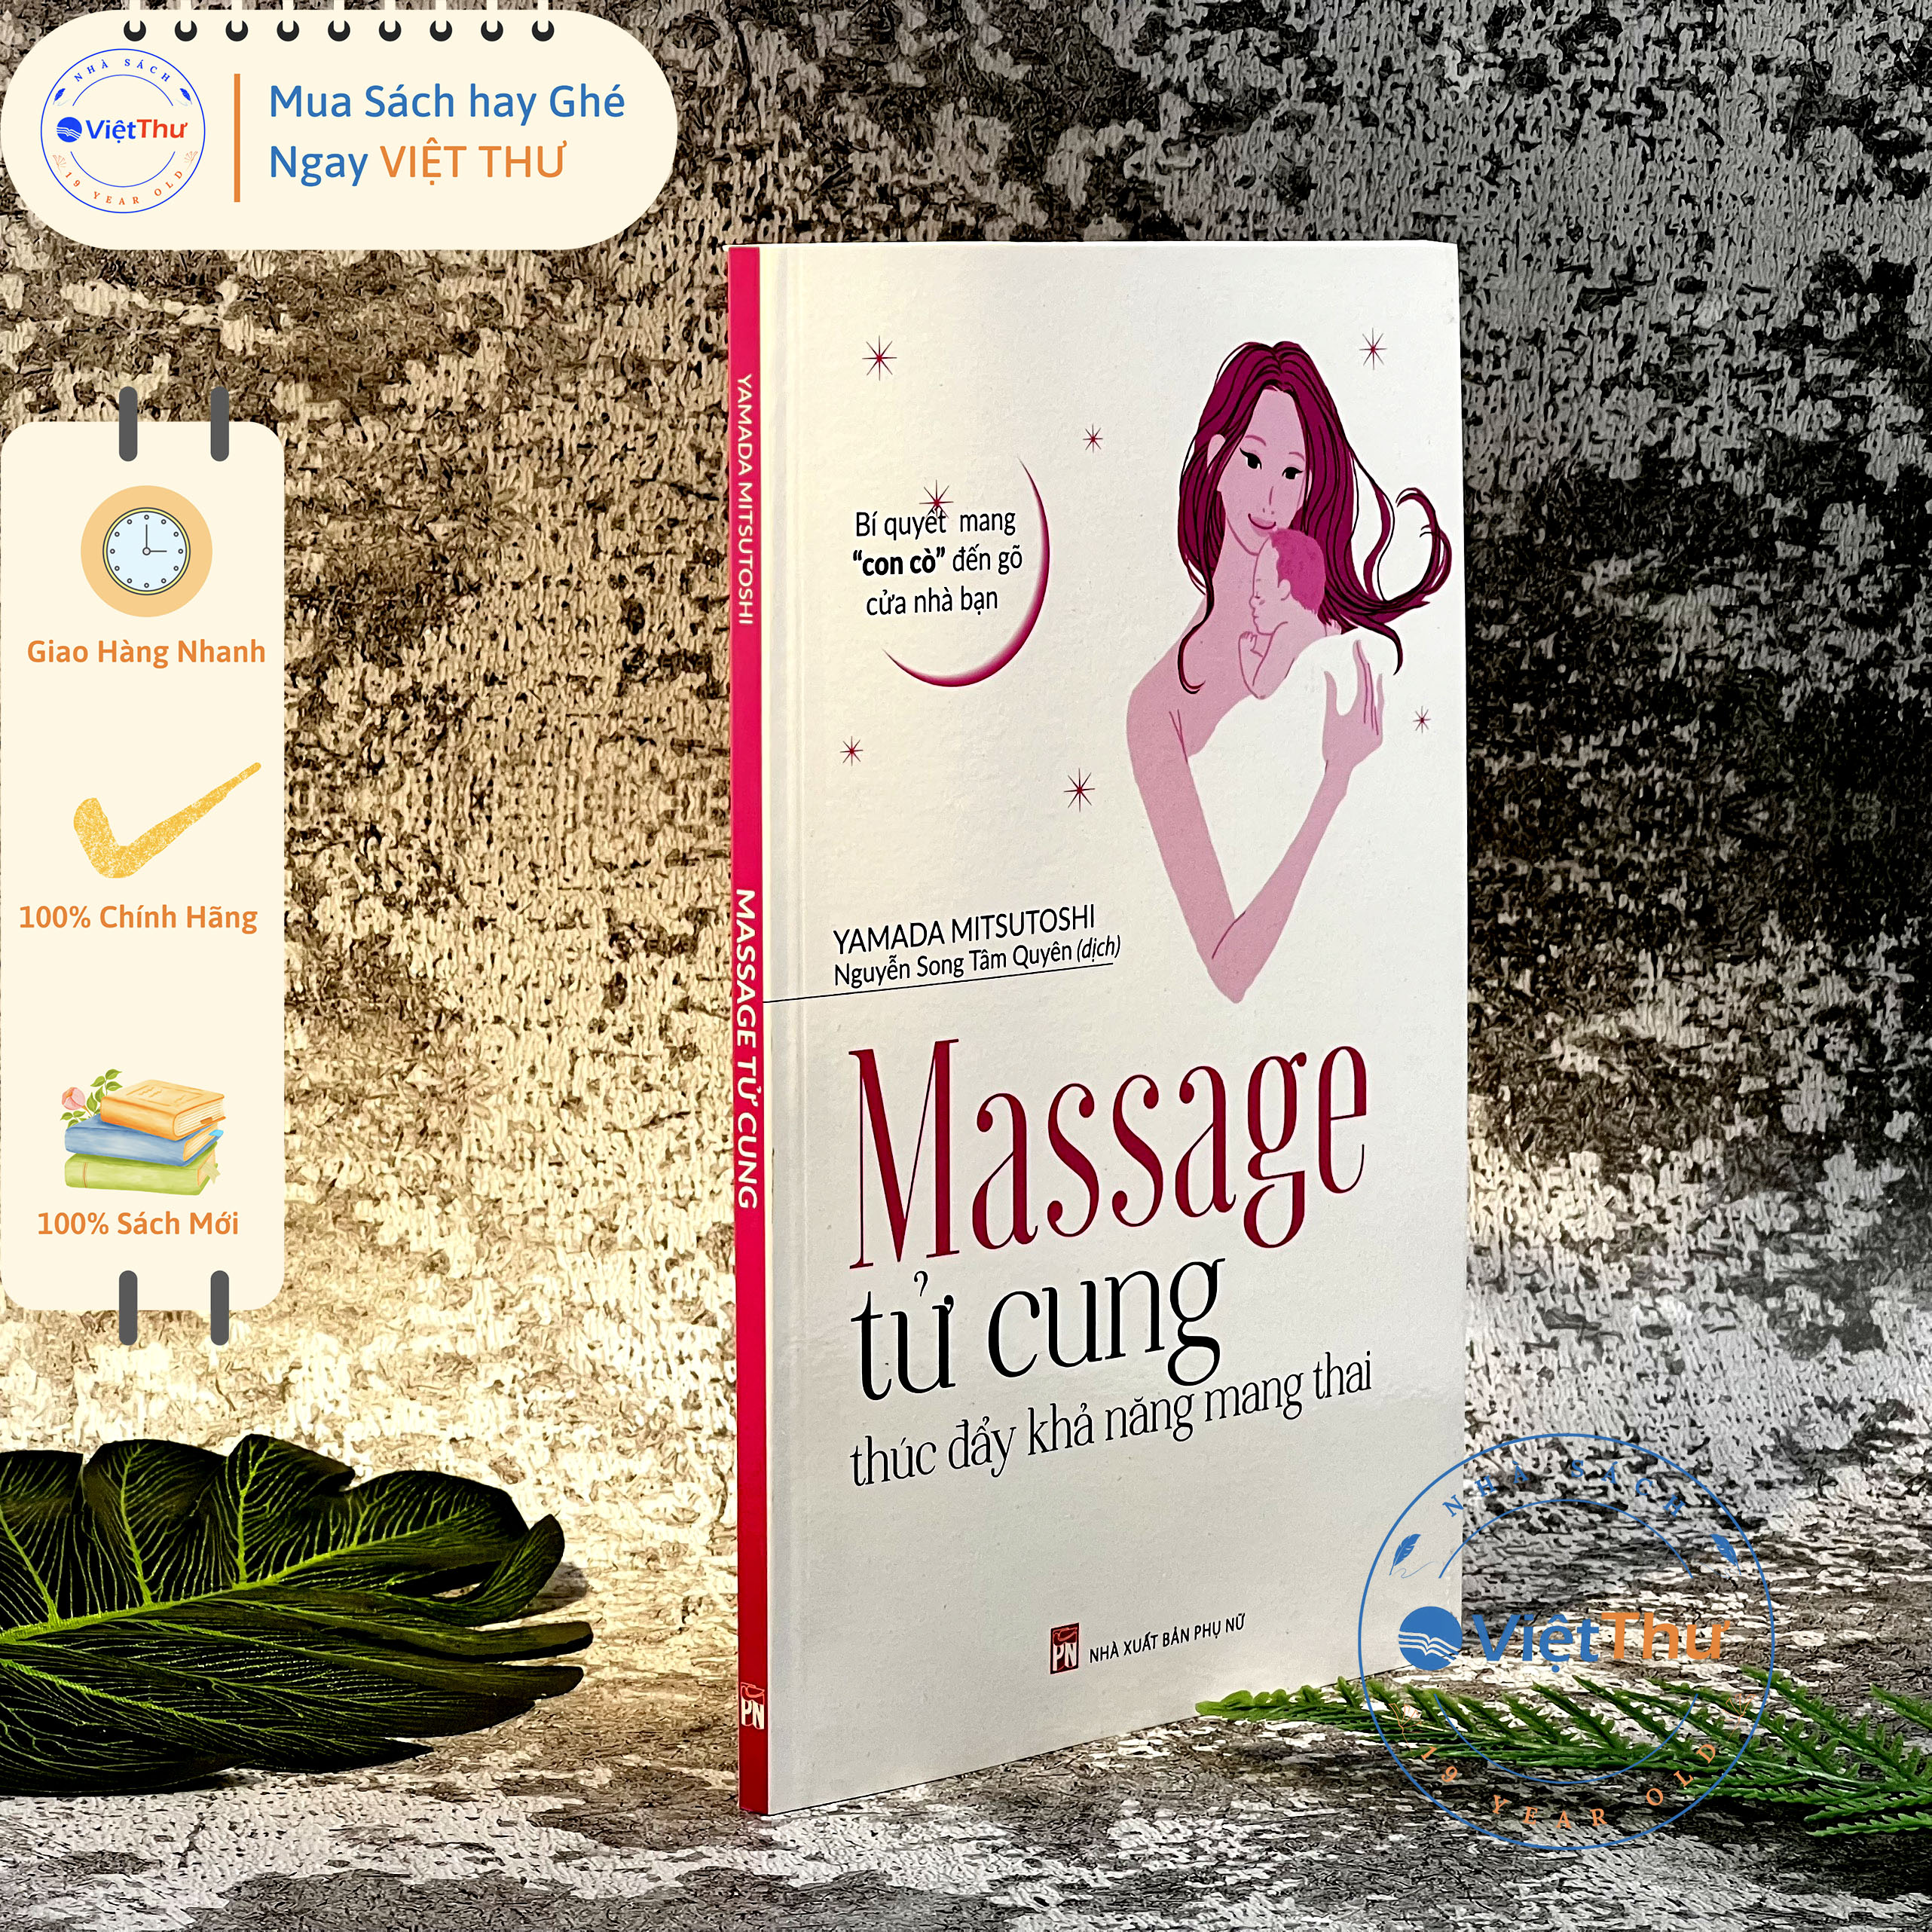 Massage Tử Cung Thúc Đẩy Khả Năng Mang Thai (PNU)